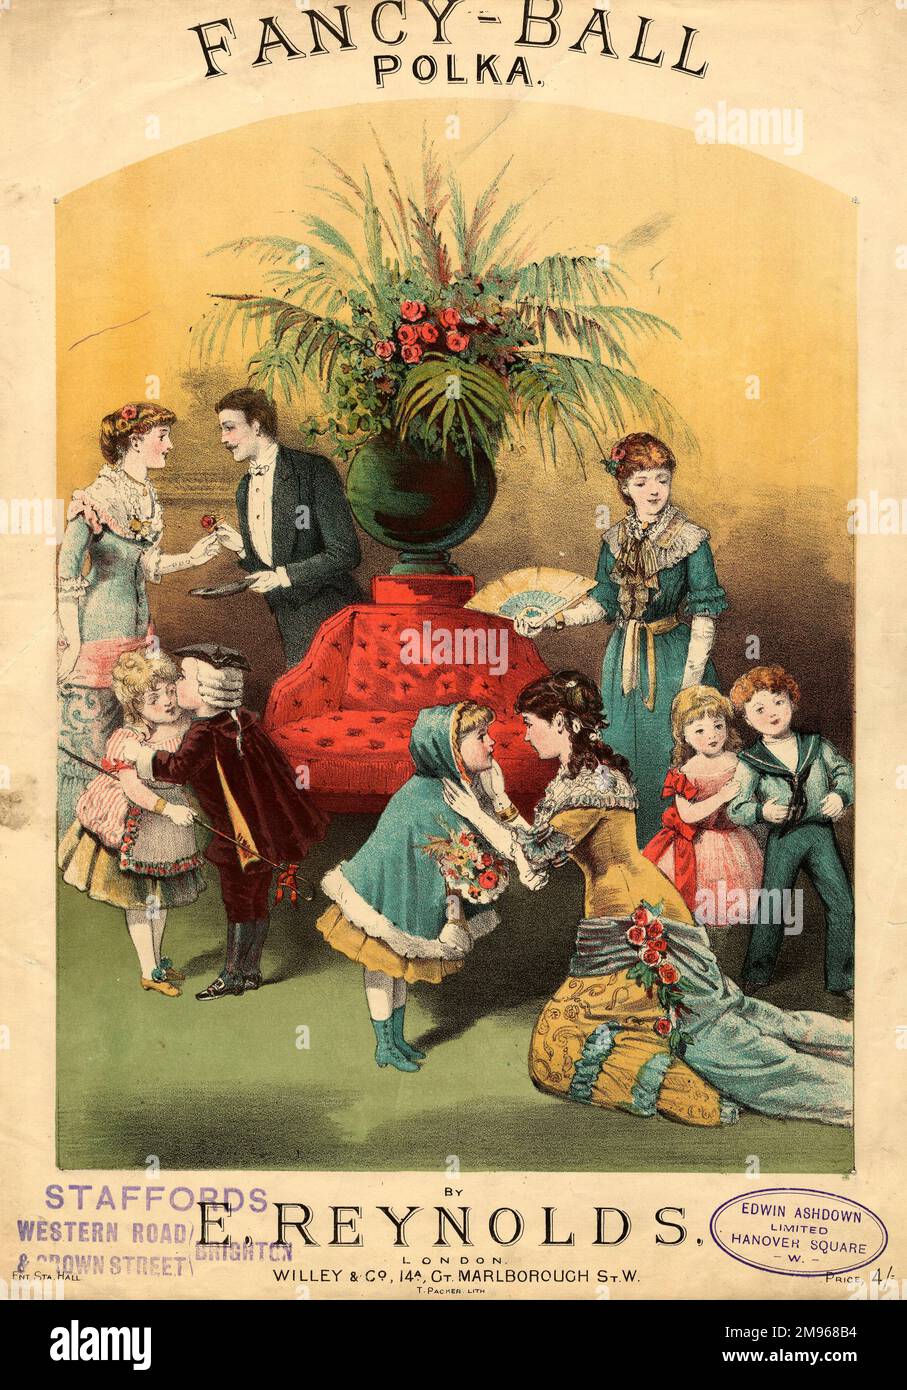 Conception de couverture pour une feuille de musique, la Fancy-ball Polka, par E Reynolds. Une famille victorienne tardive est représentée, avec des adultes et des enfants habillés pour une fête. Banque D'Images